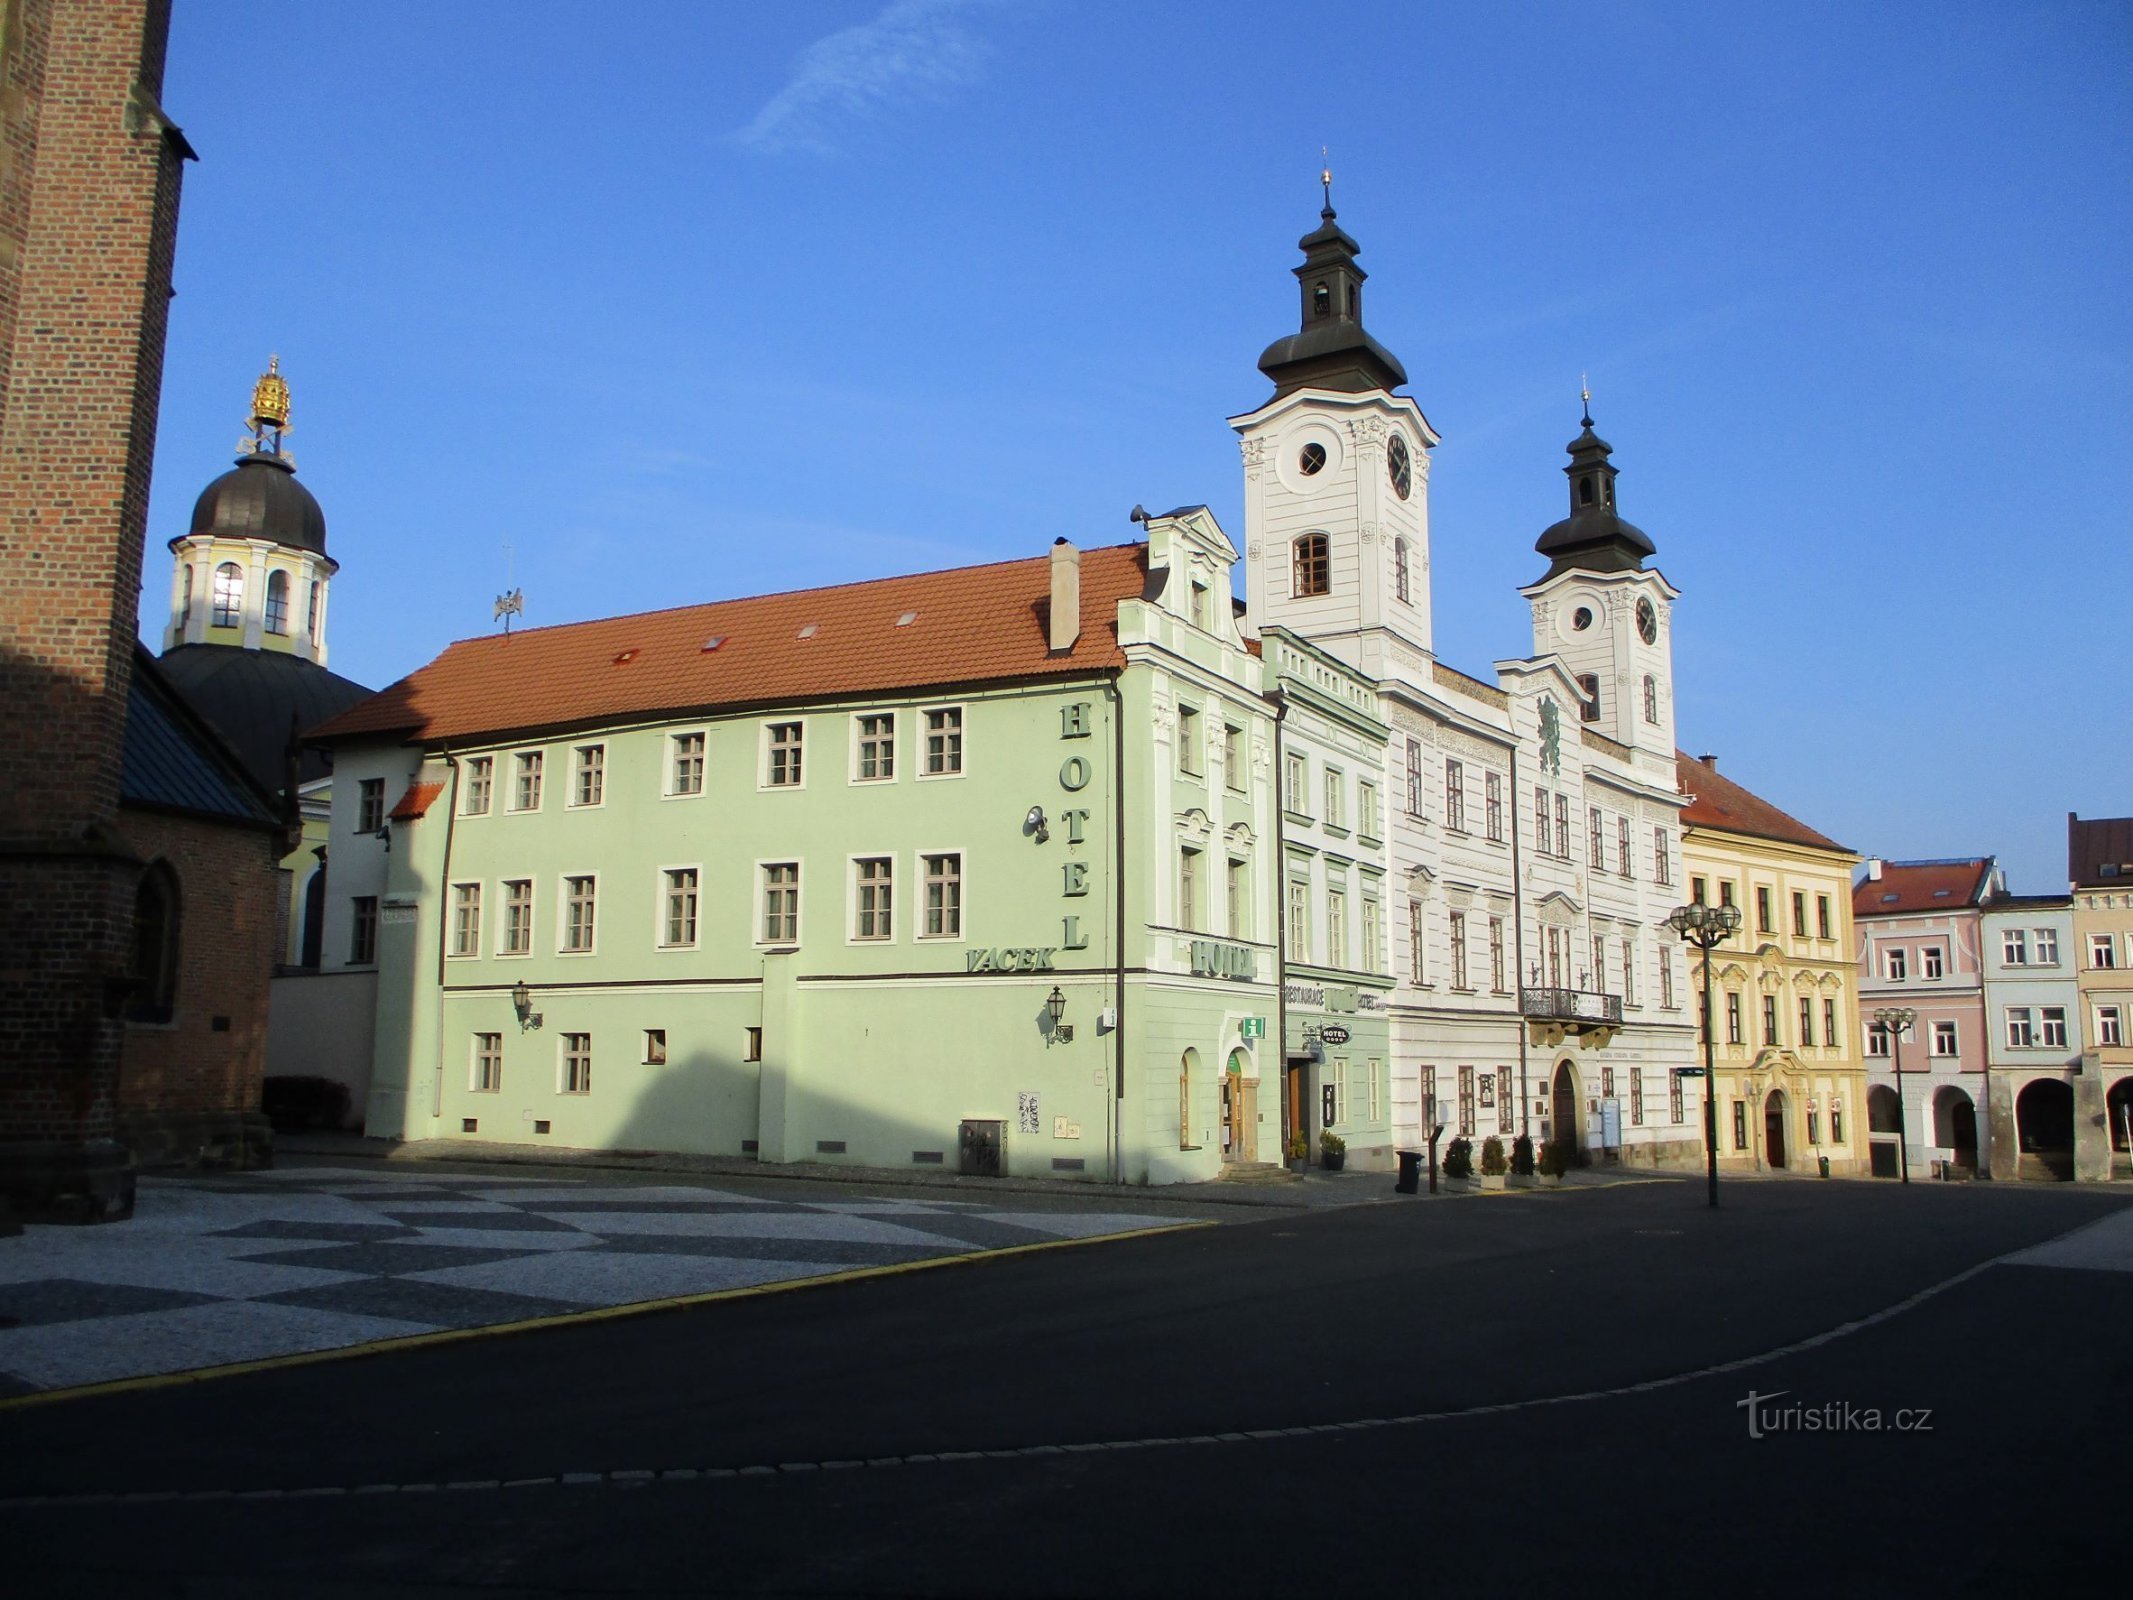 Velké náměstí osoitteesta nro 166 (Hradec Králové, 9.2.2020. helmikuuta XNUMX)